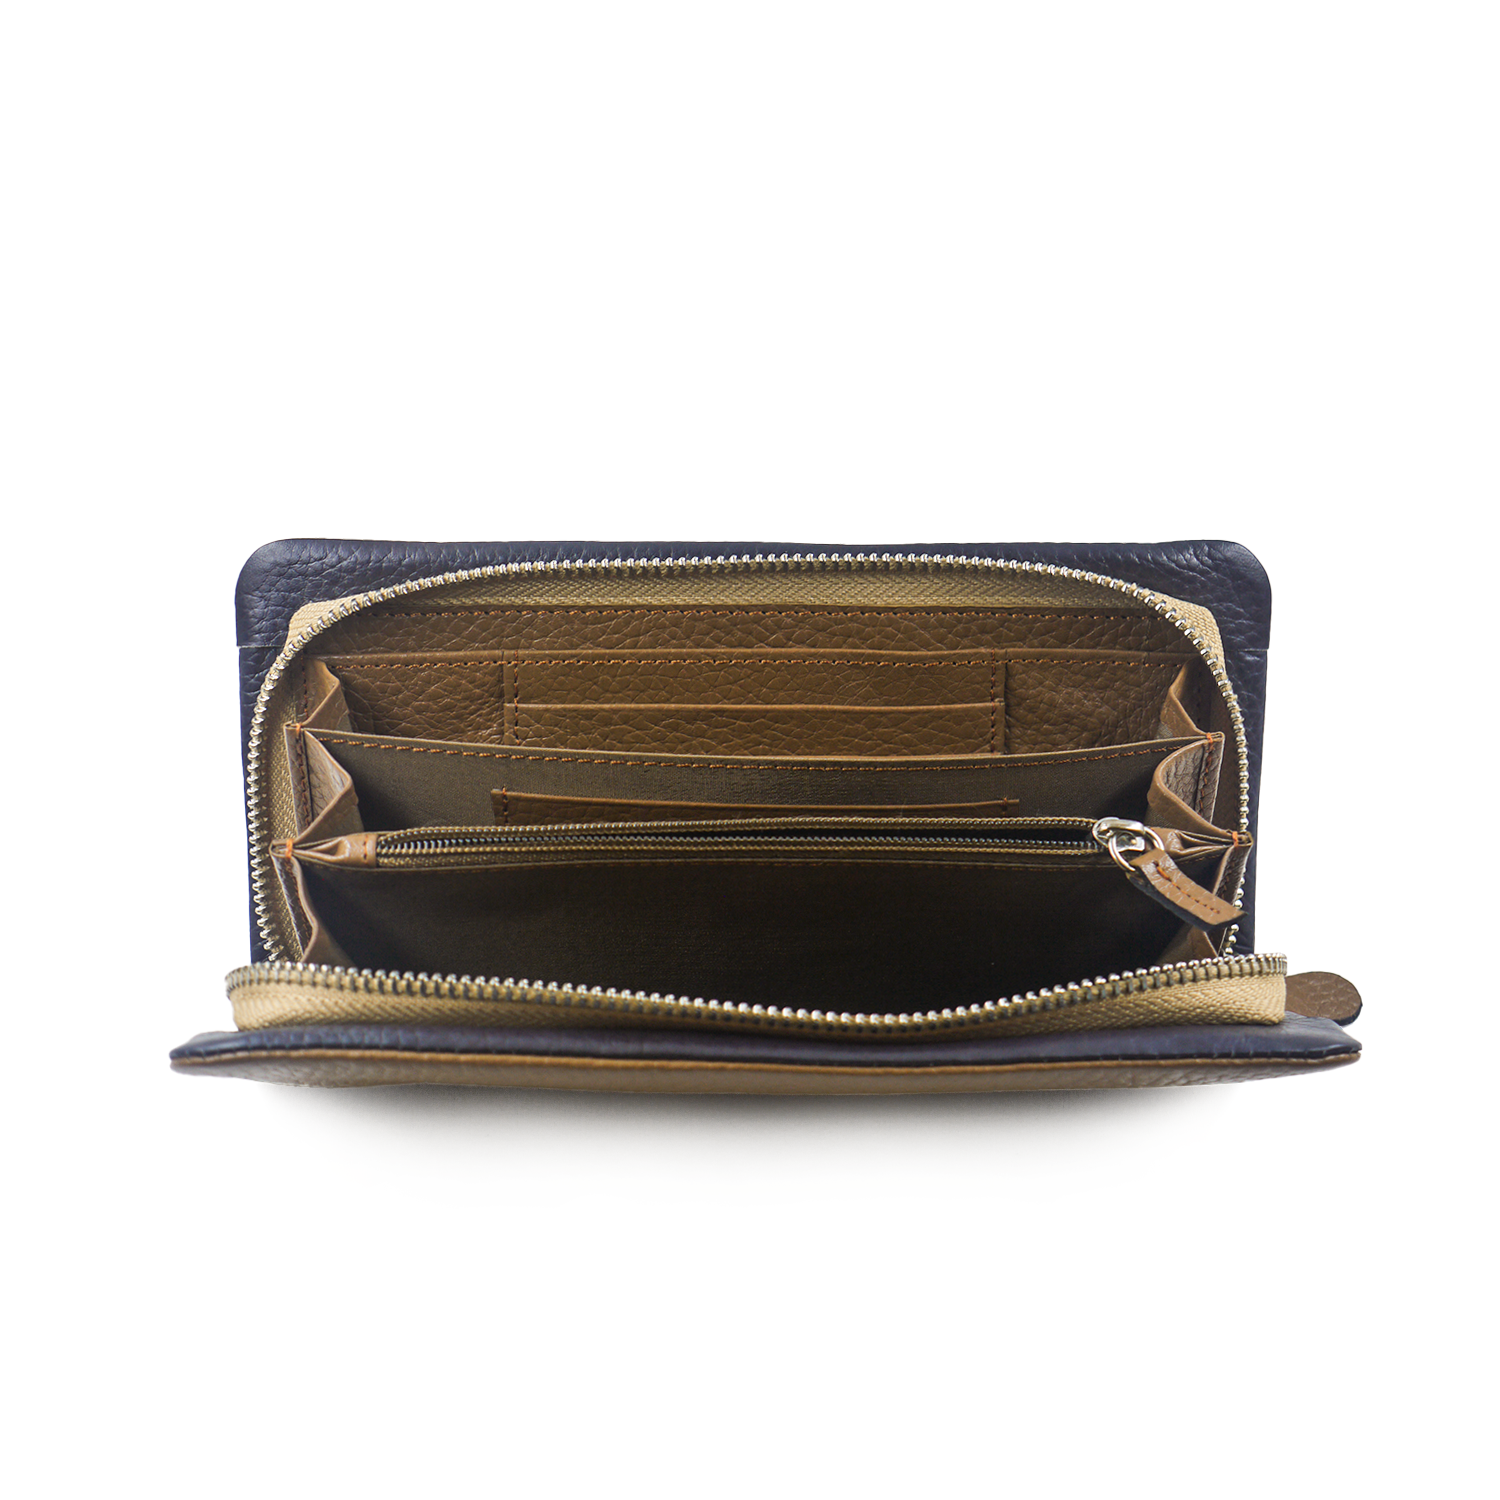 Colette Malouf retro clutch purse small 8x8 | eBay